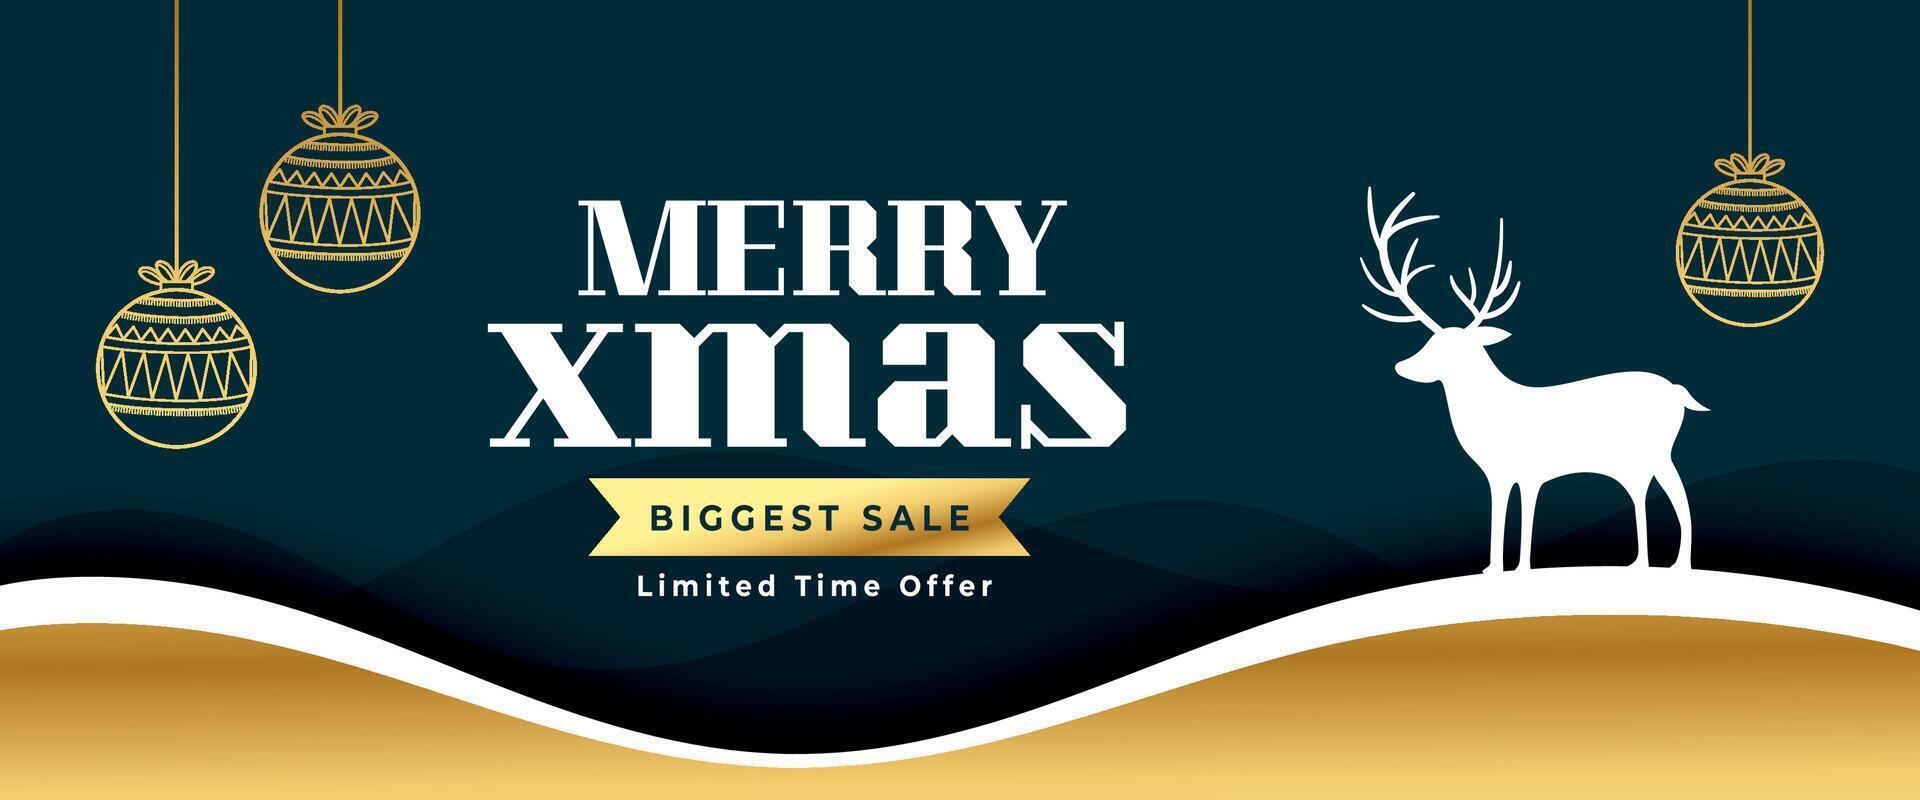 dekorativ fröhlich Weihnachten Einladung Hintergrund mit größte Verkauf Angebot vektor